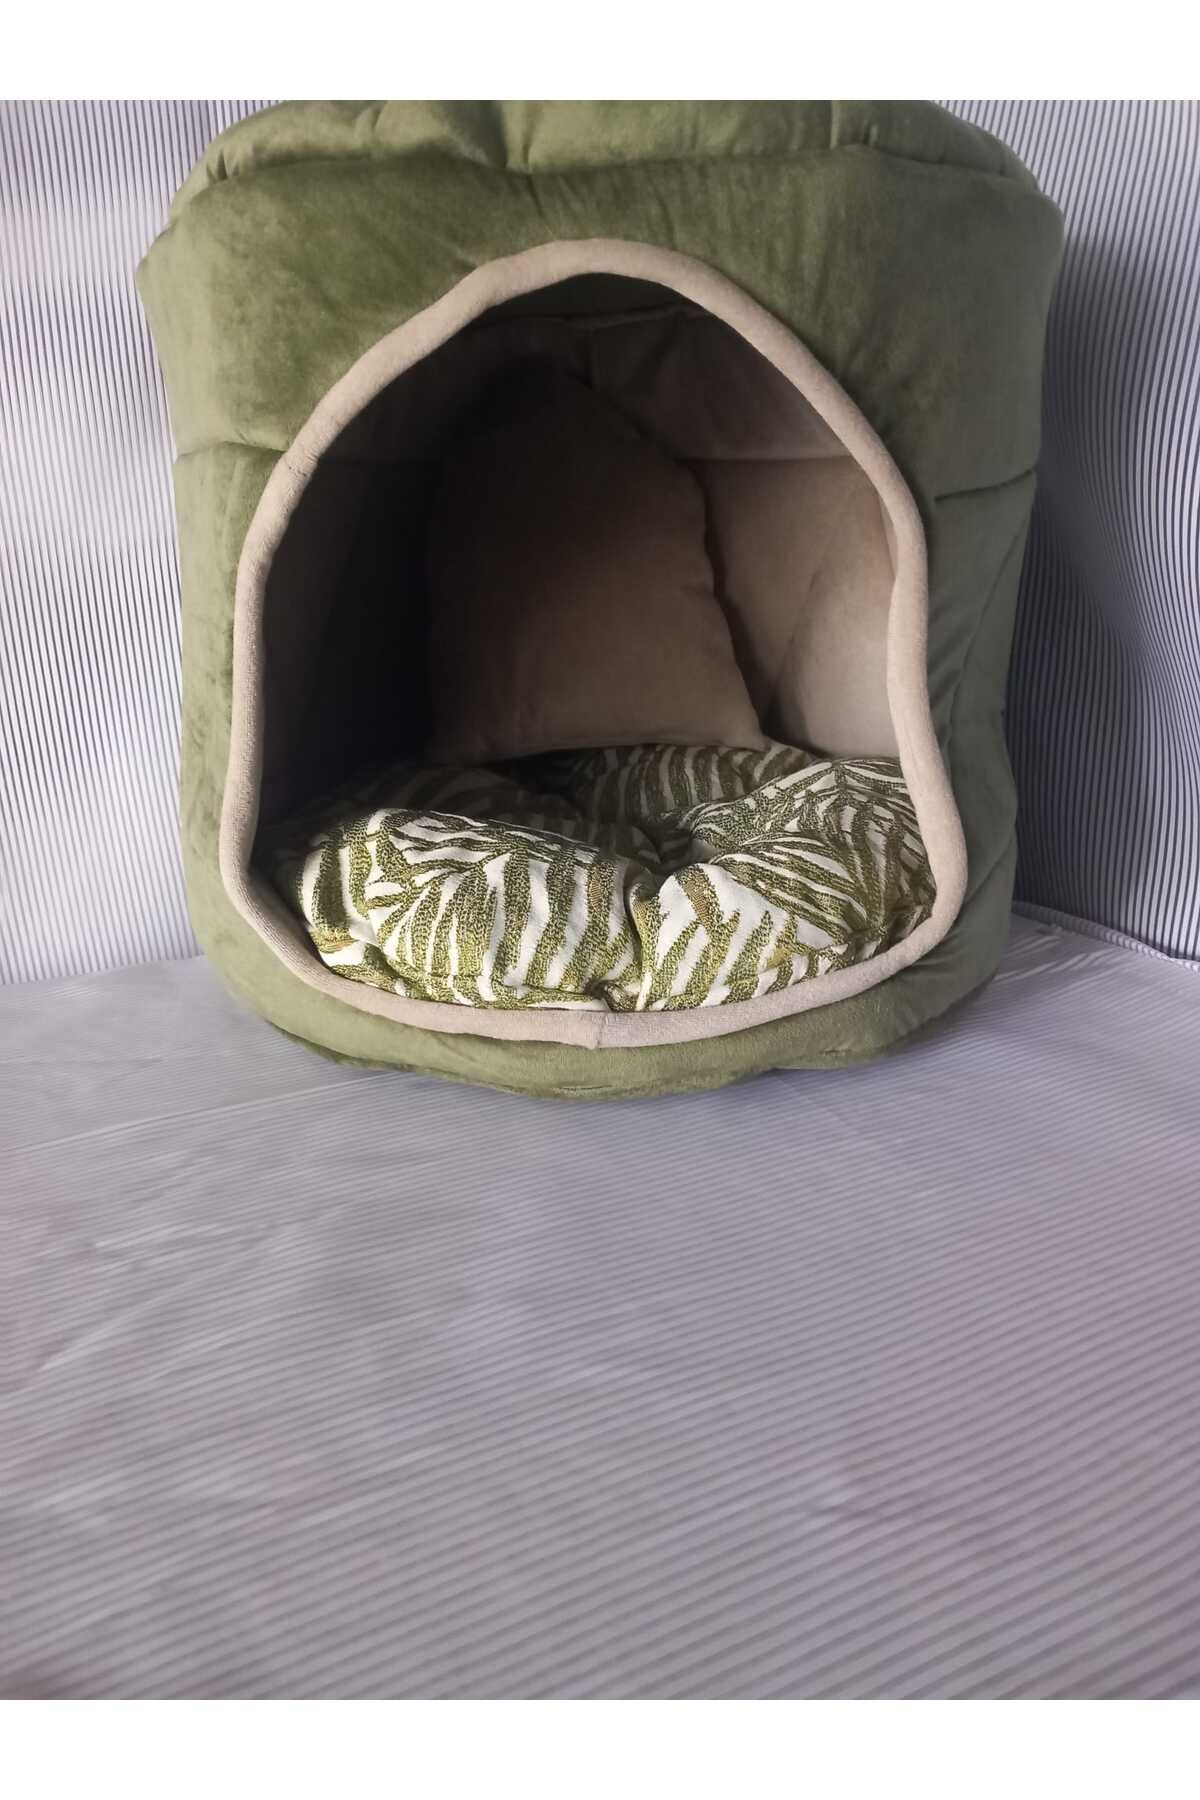 CANSA kedi köpek yatağı